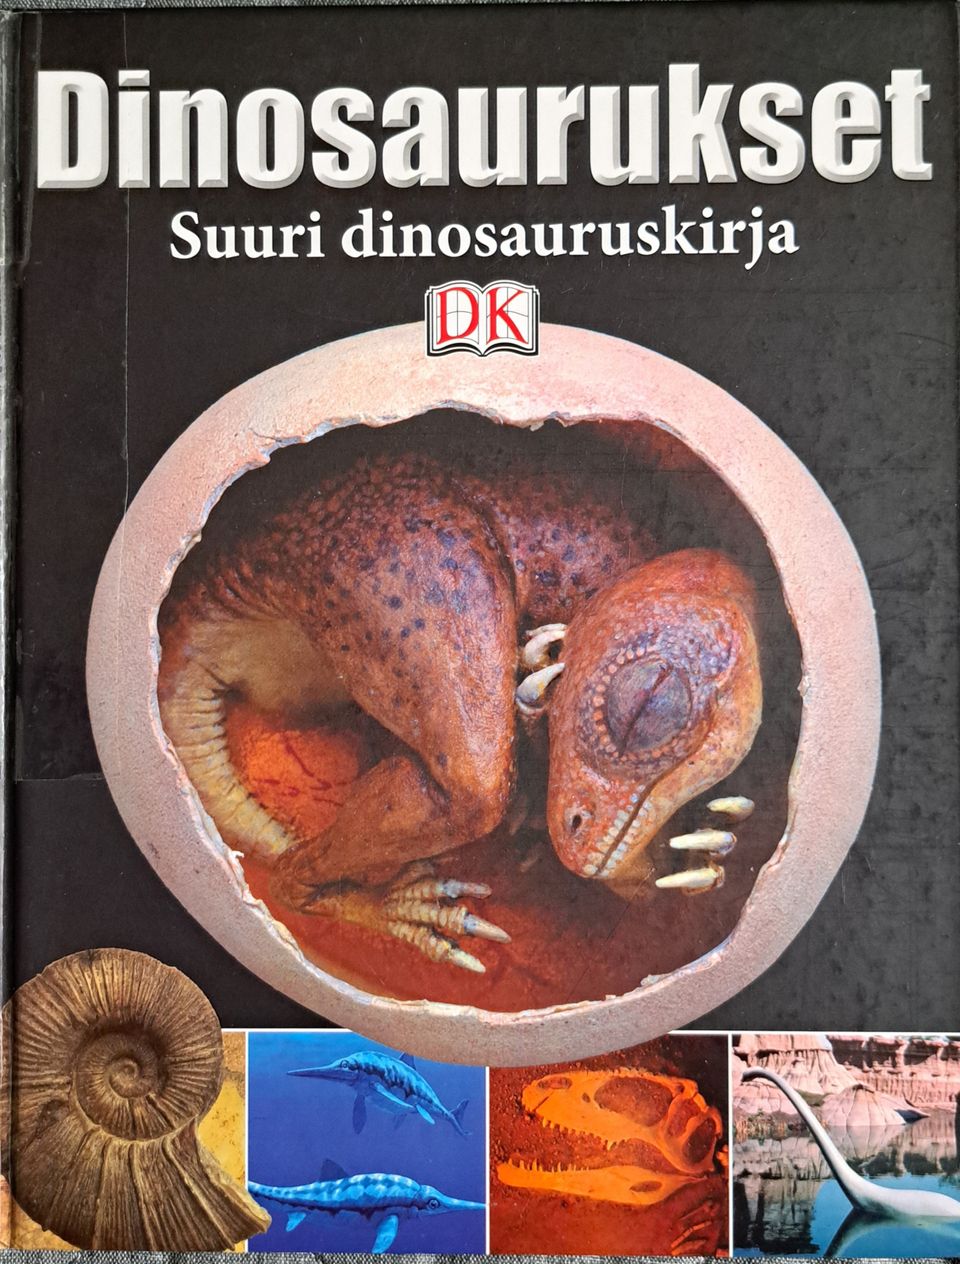 Dinosaurukset Suuri dinosauruskirja